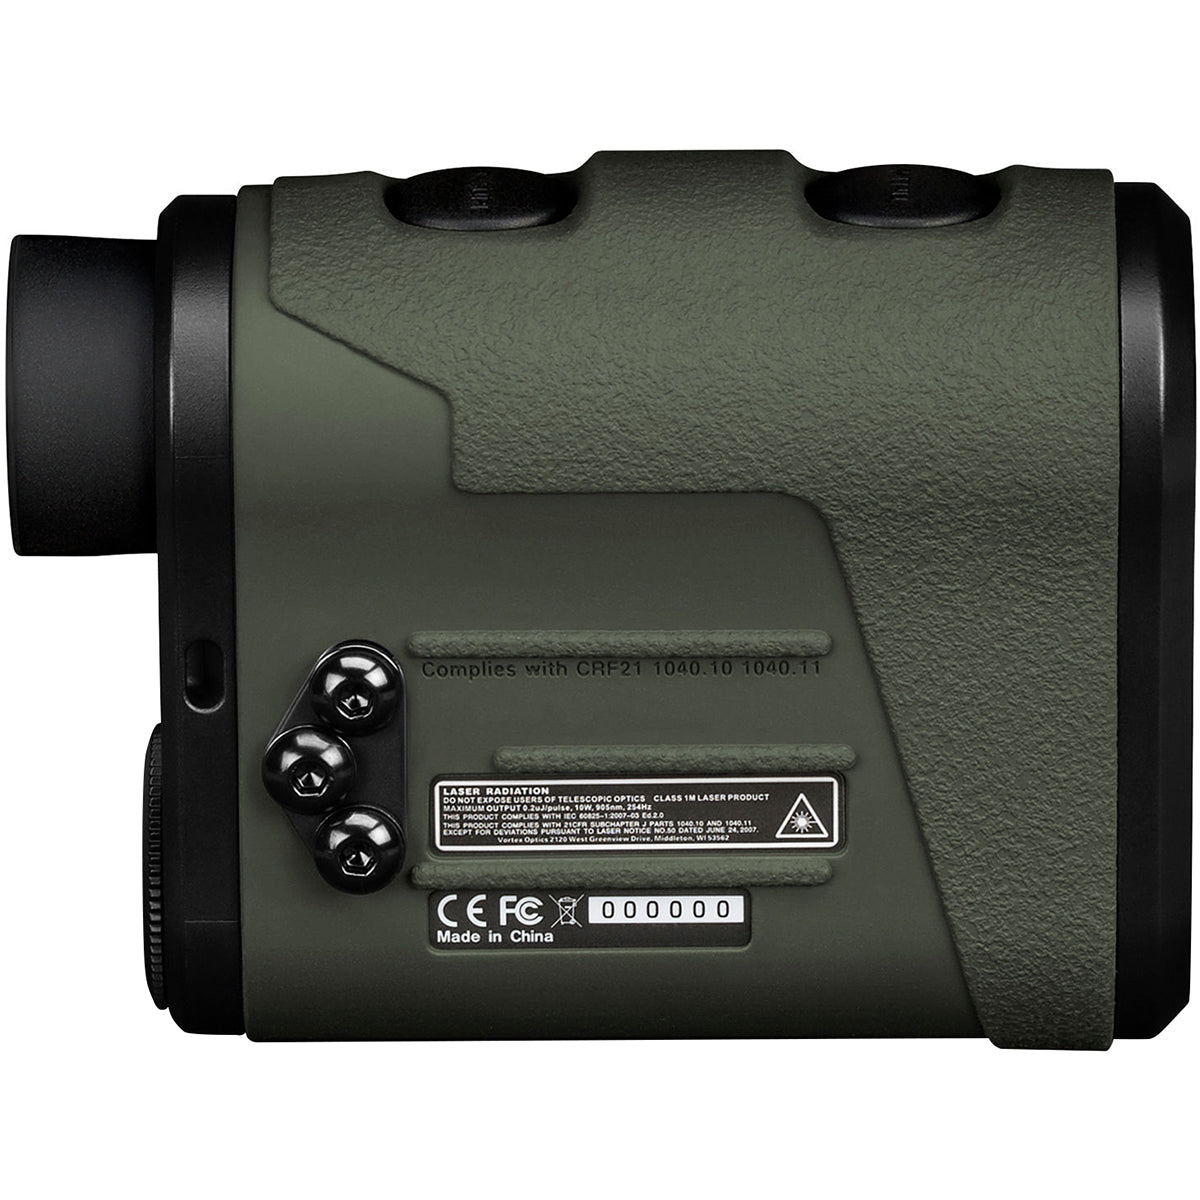 Vortex Optics Ranger 1800 Laser Rangefinder Vortex